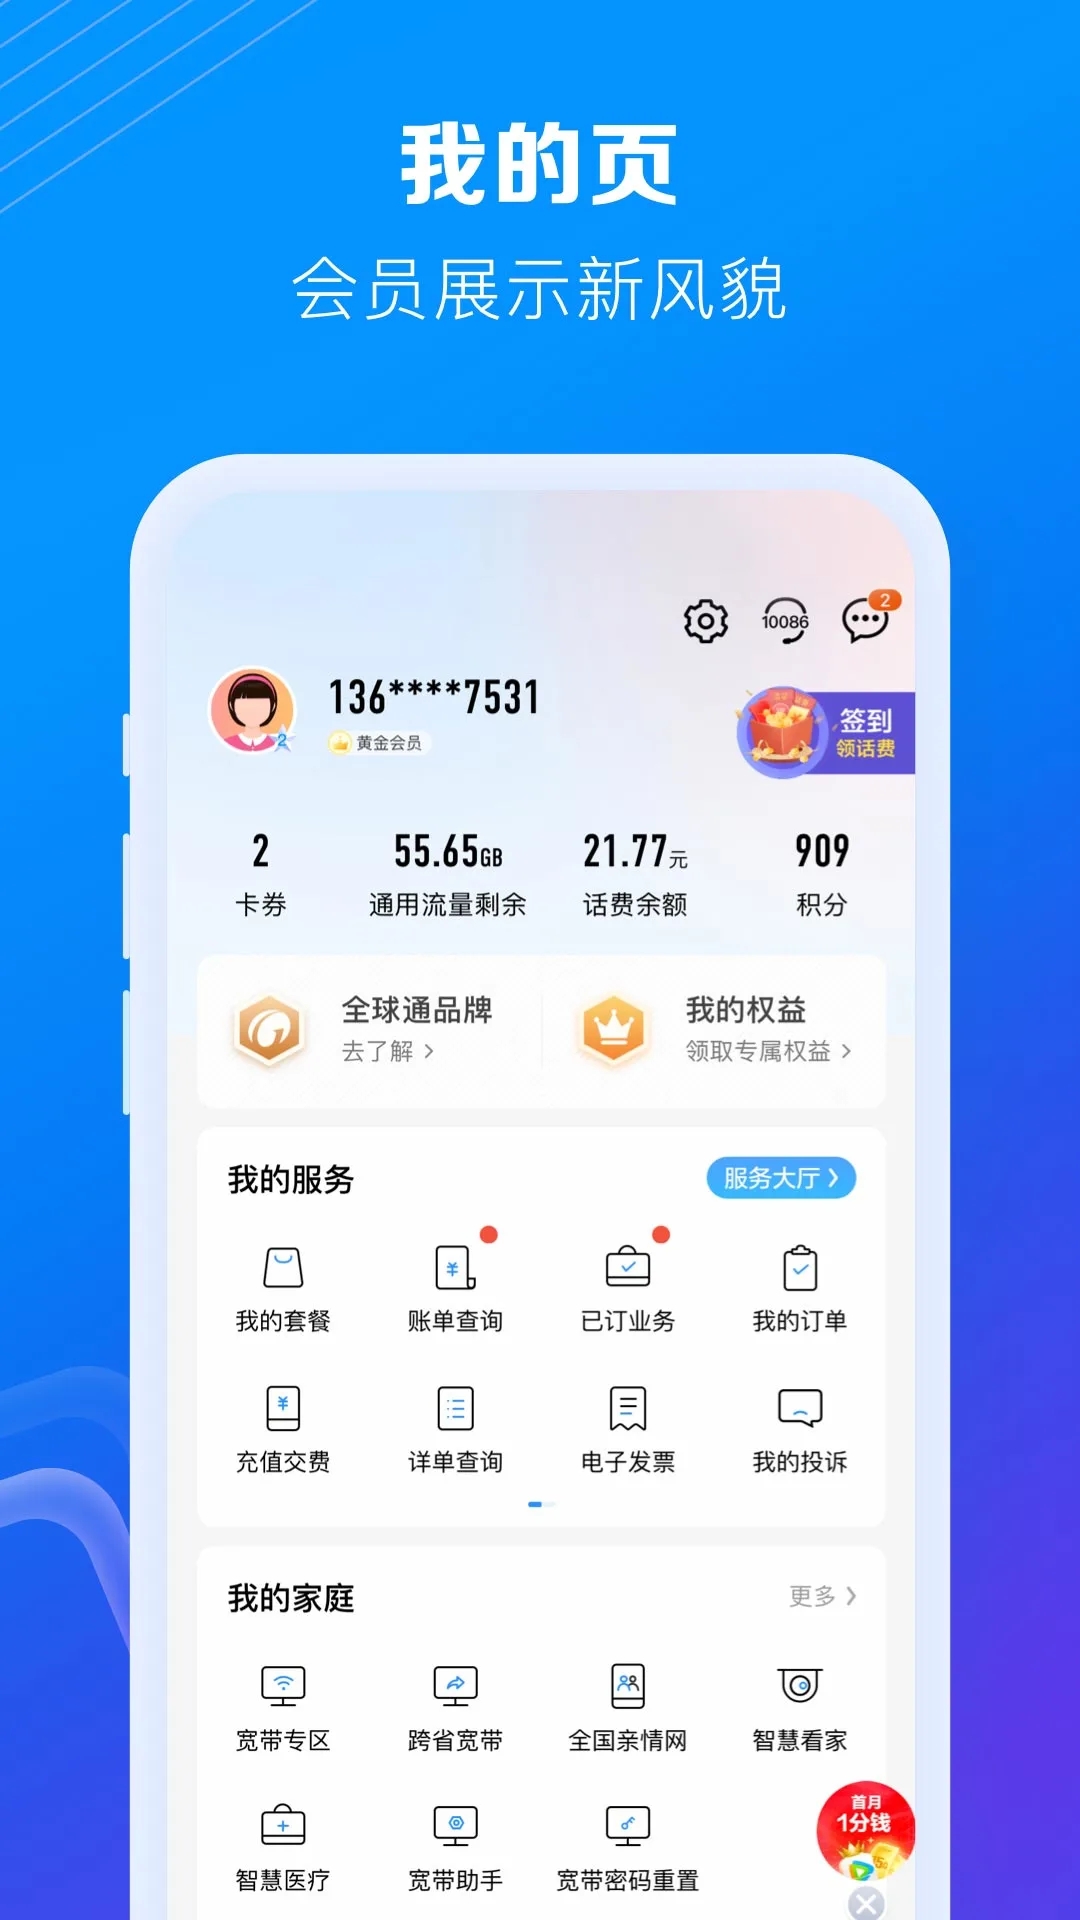 中国移动app免费下载